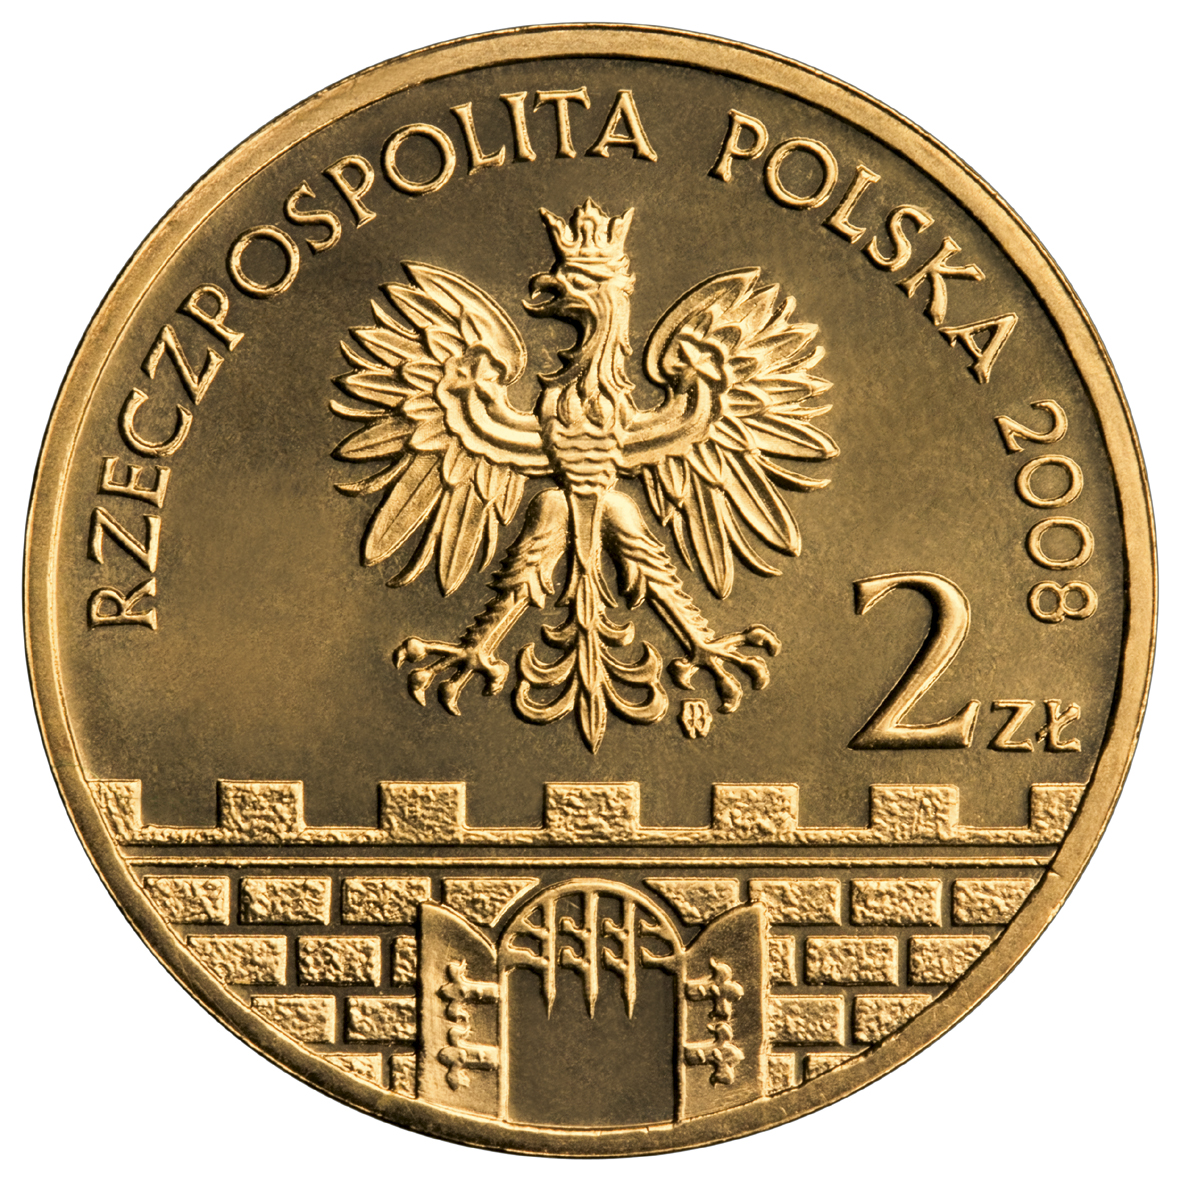 2zl-bielsko-biala-awers-monety